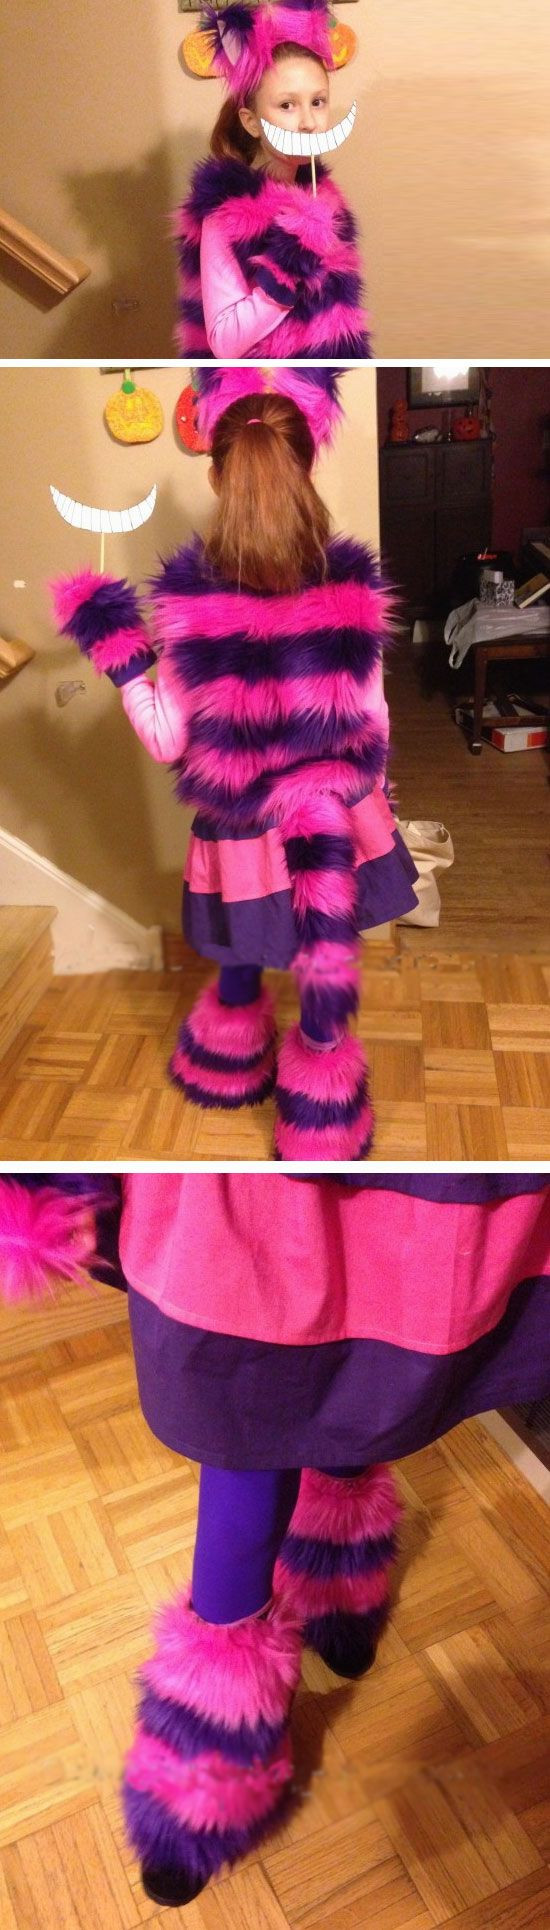 Cheshire Cat DIY Costume
 Cheshire Cat